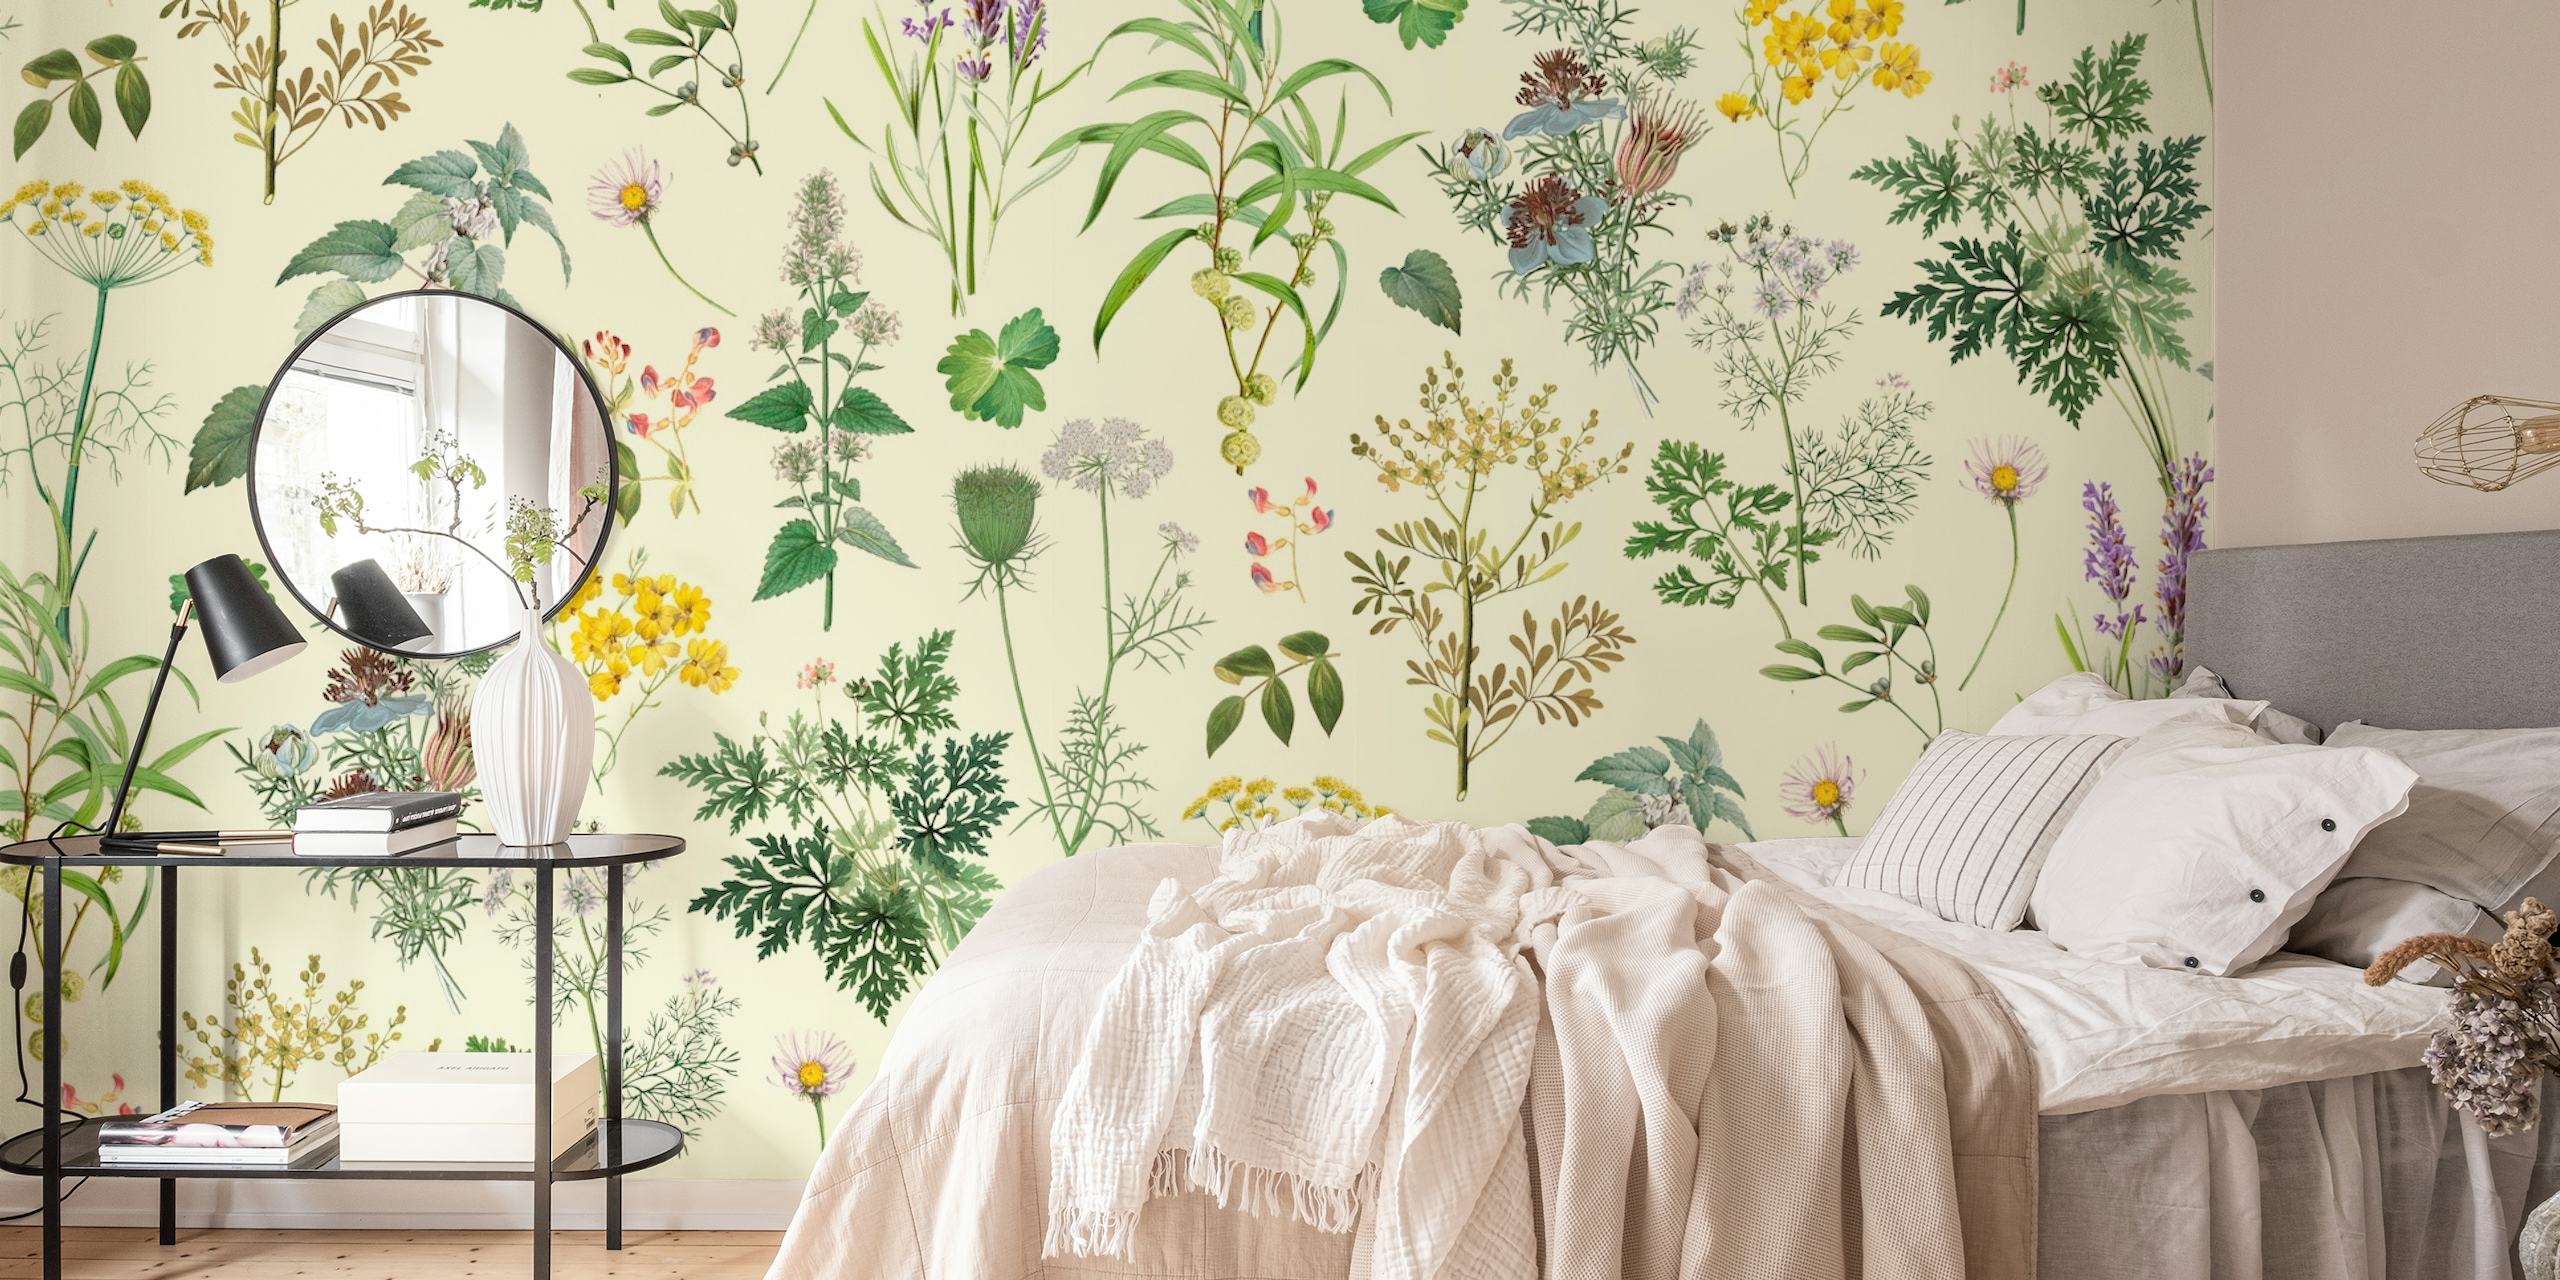 Papier peint Herbs and Wildflower II avec diverses fleurs sauvages aux couleurs douces